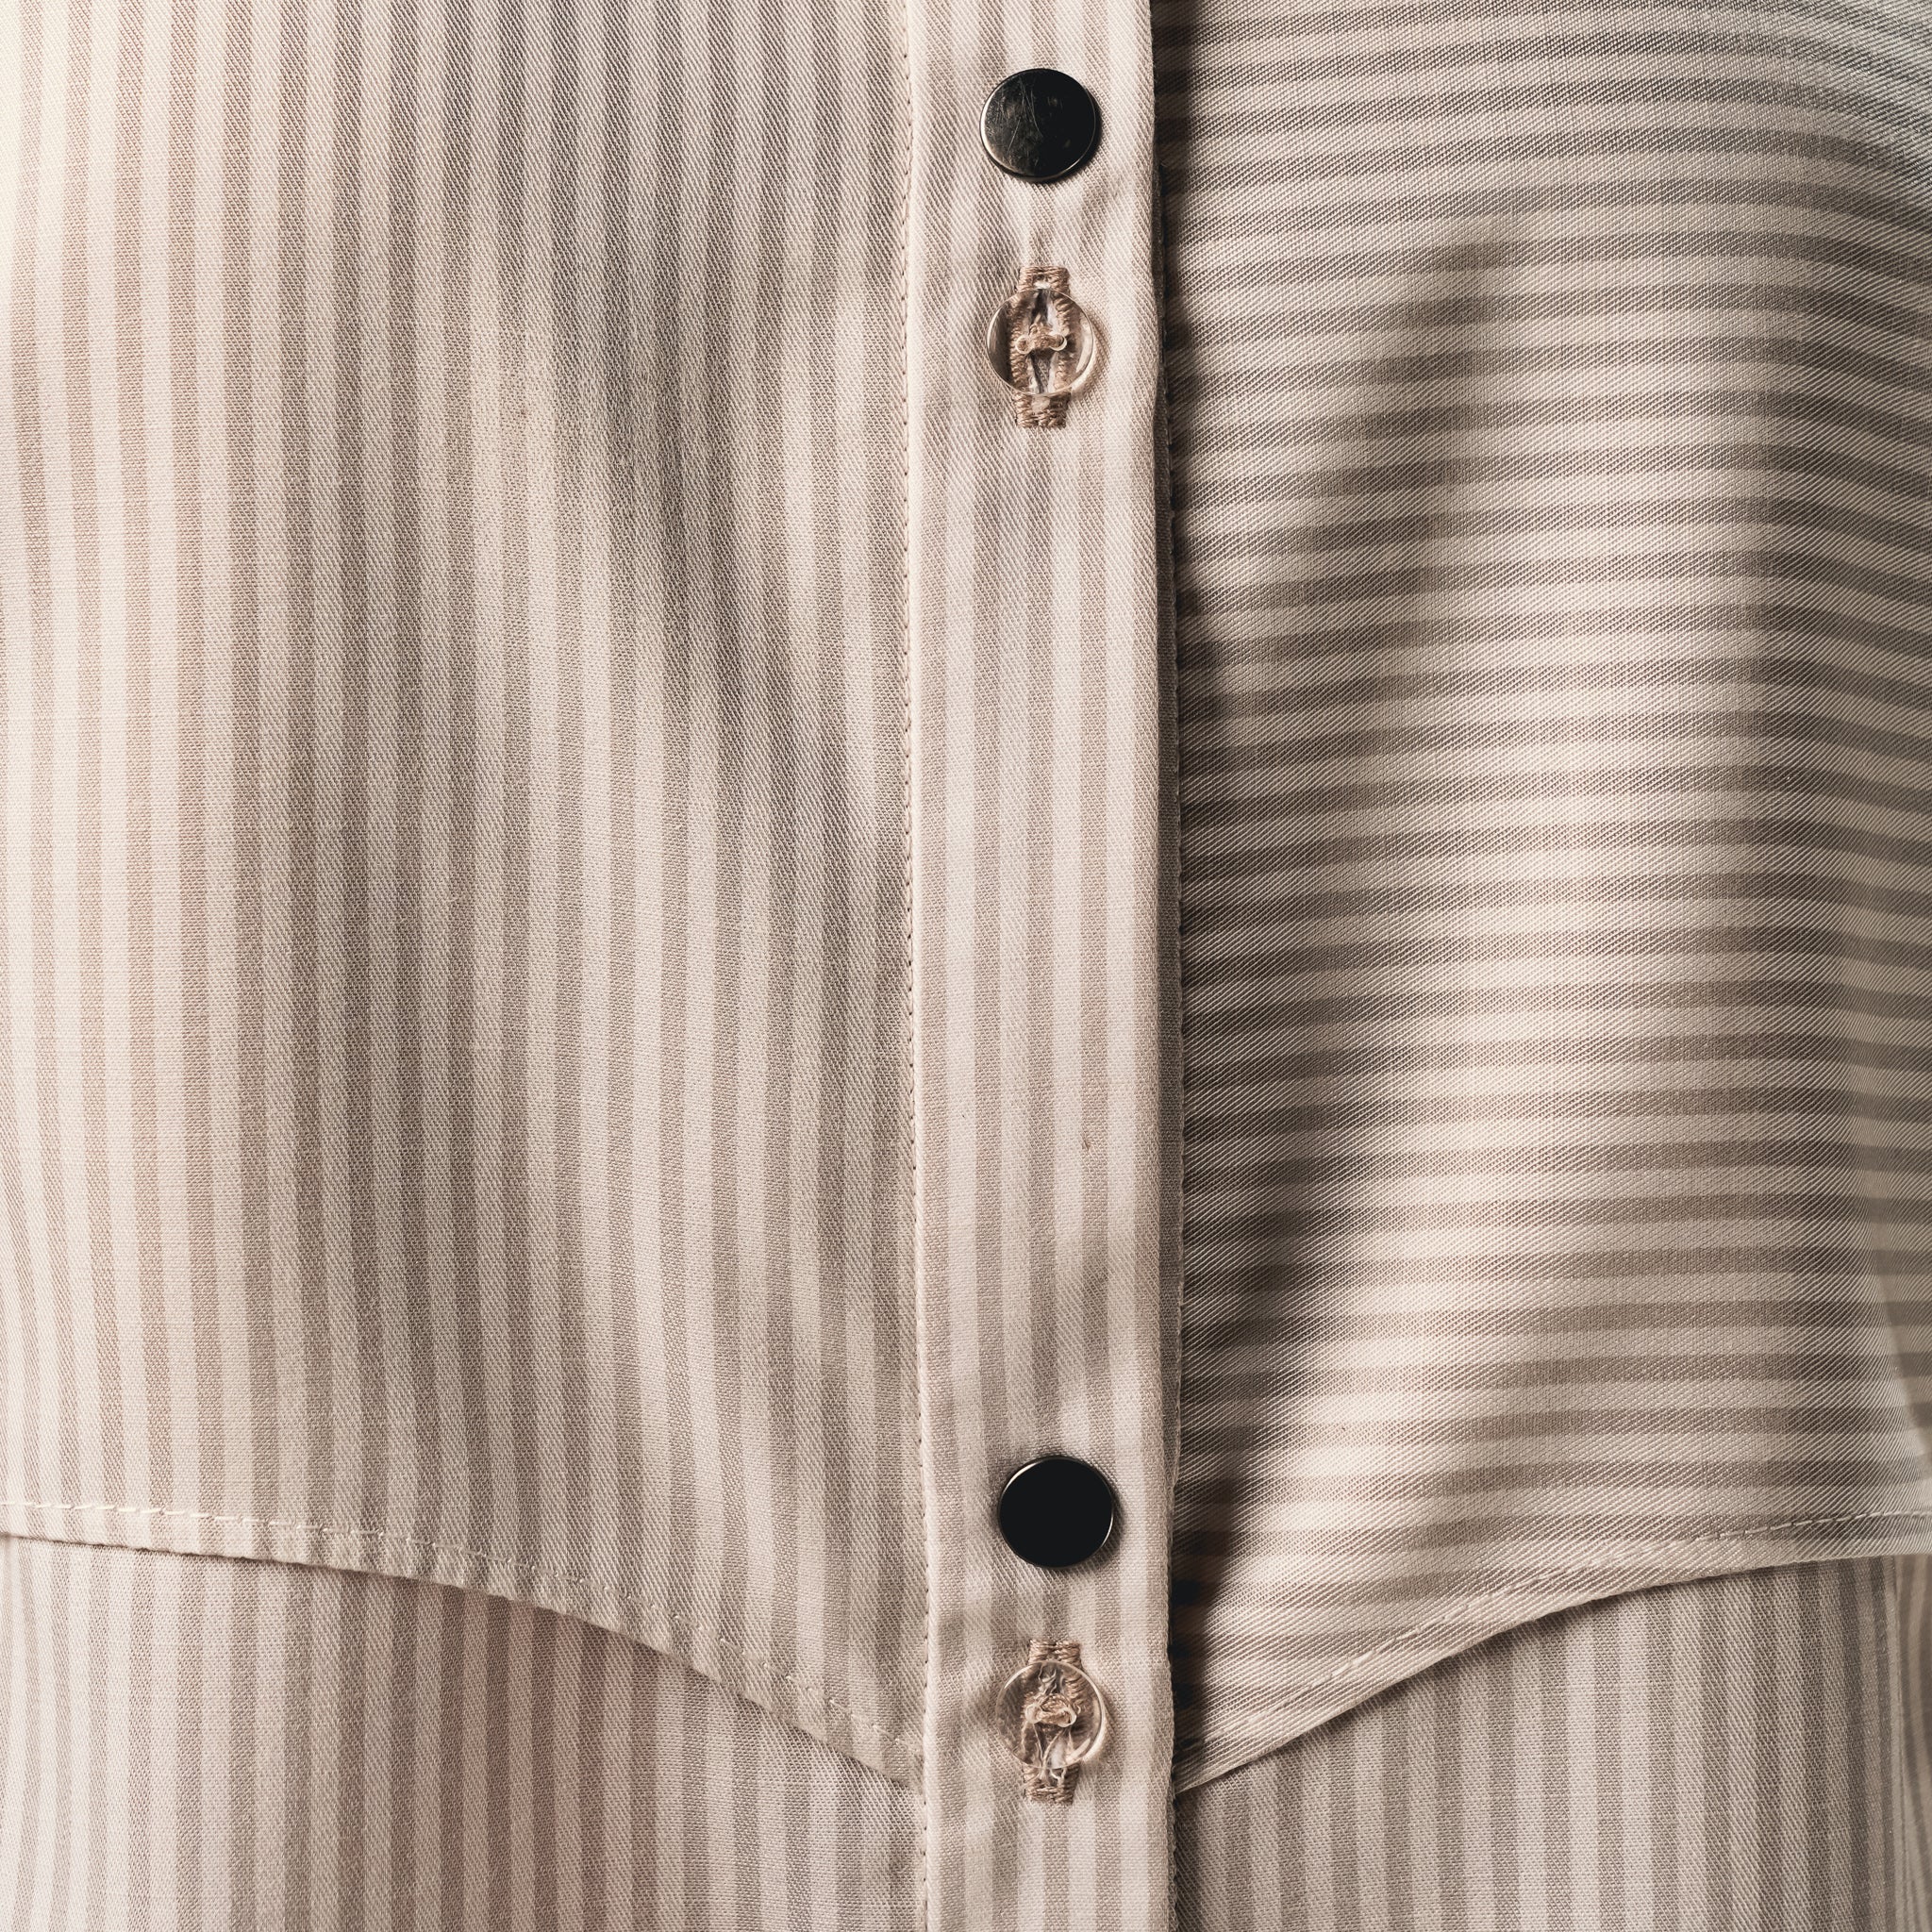 Striped shirt dress button detail